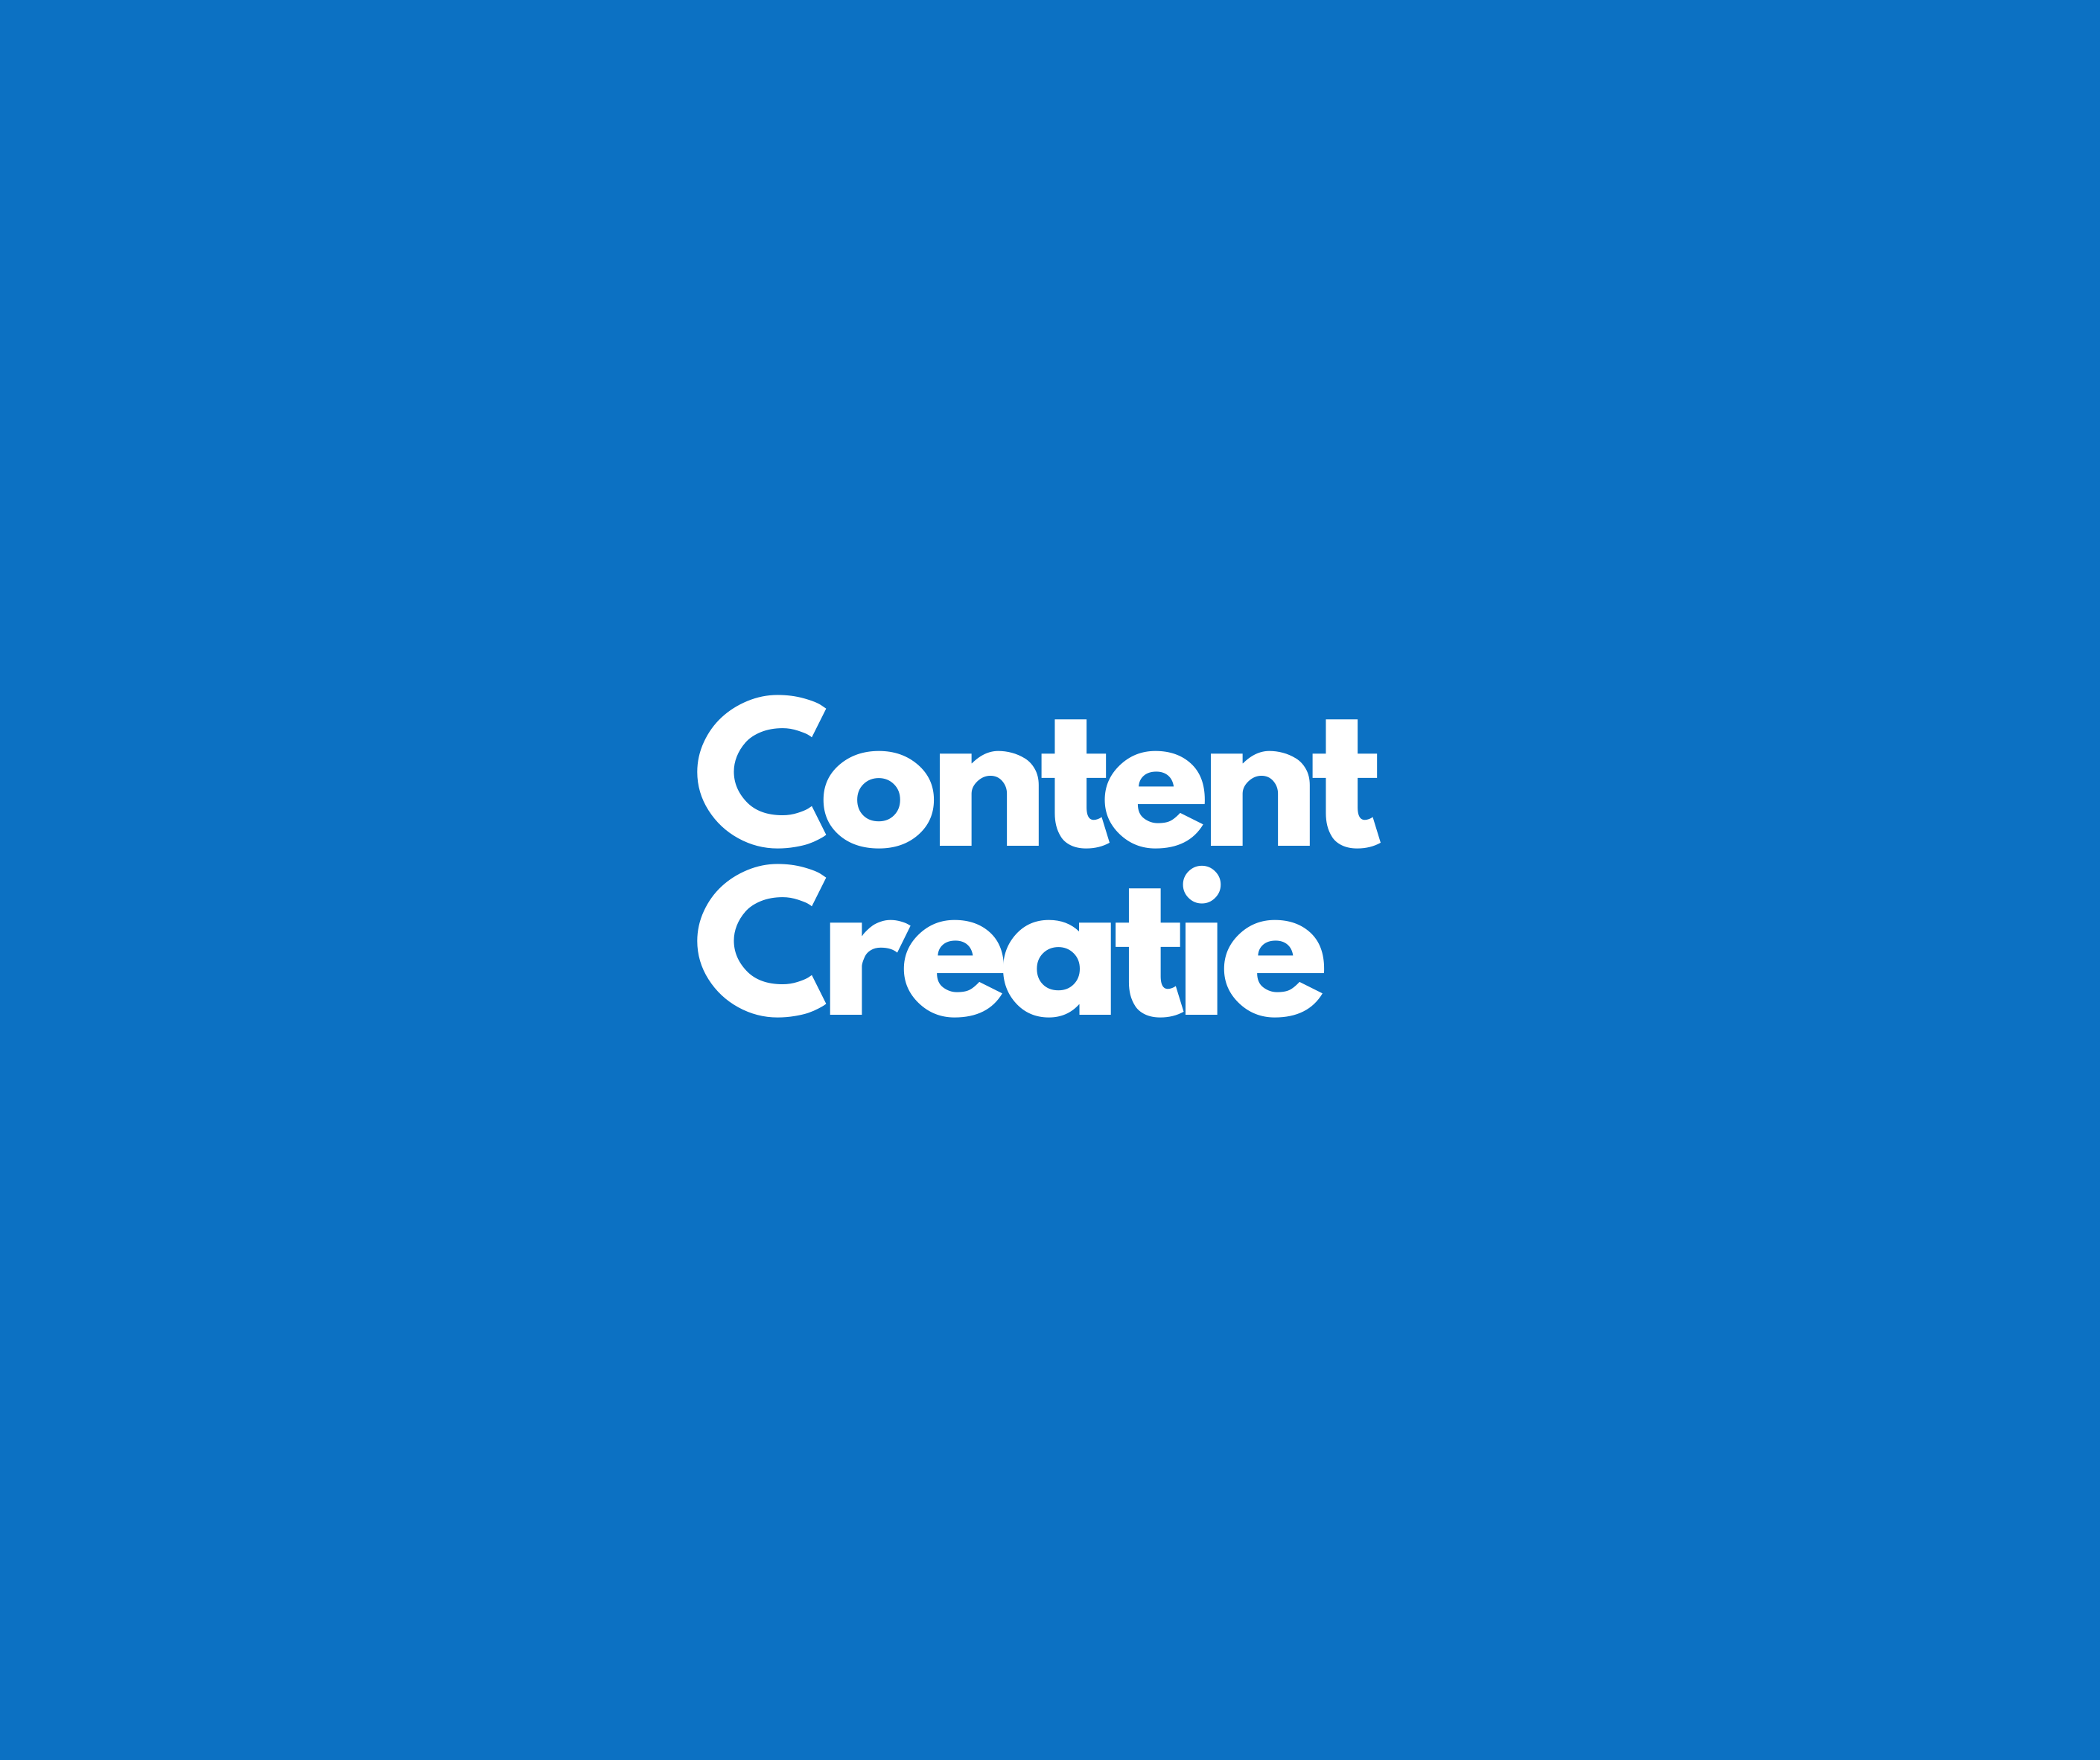 Content Creatie